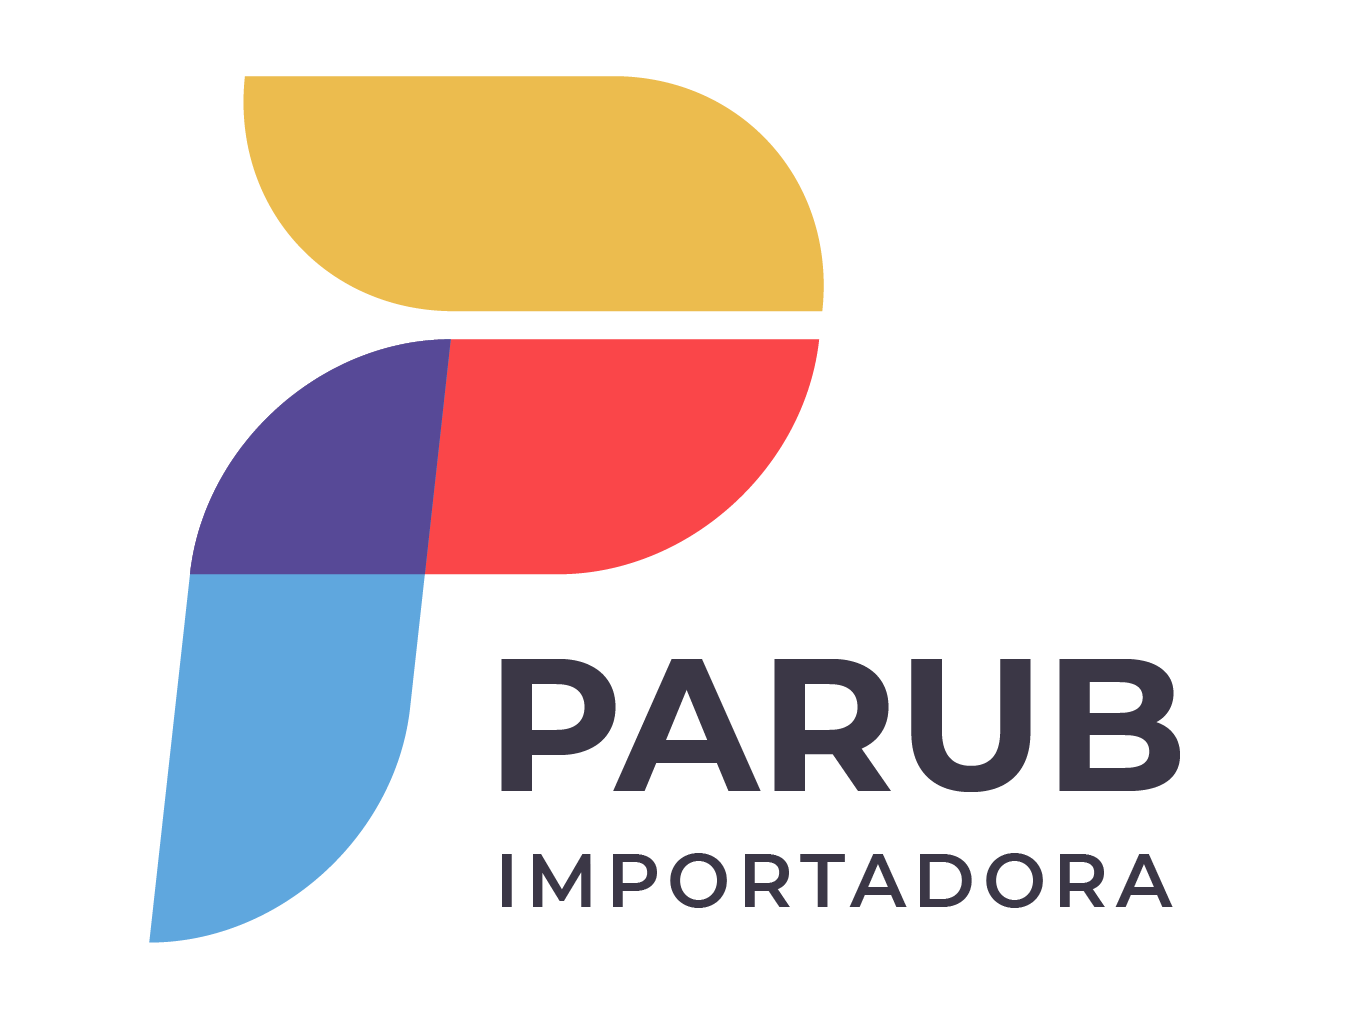 Parub